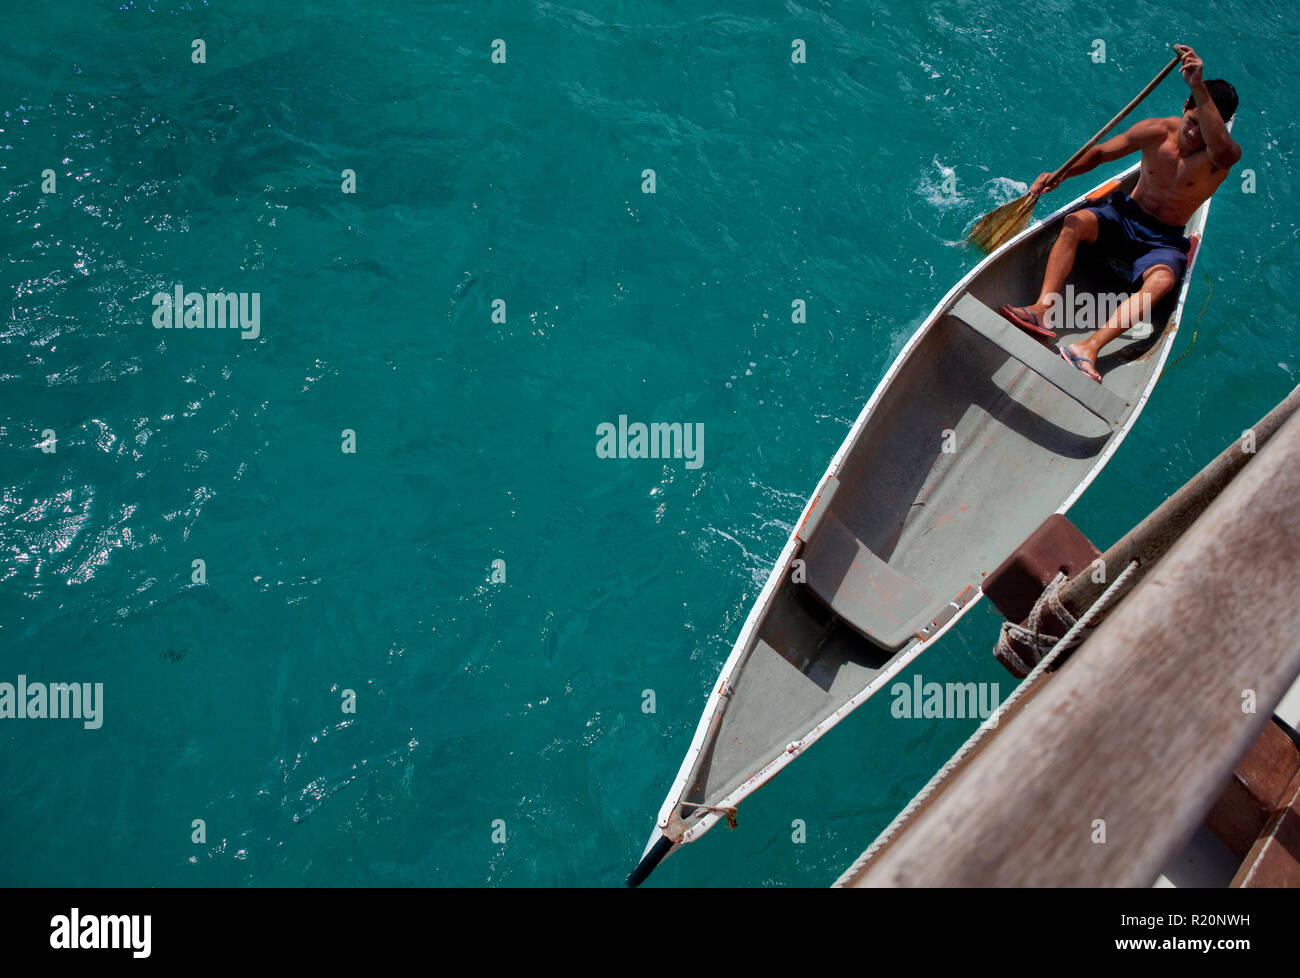 Membre de l'équipage, Malik, à la pagaie Marumaru Atua, une moderne de 22 mètres "vaka" construit dans le style traditionnel polynésien de trans-océanique voyageant des navires. Banque D'Images